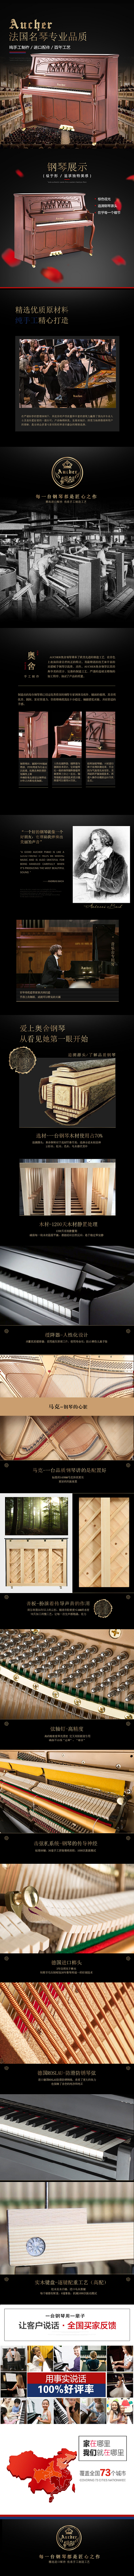 AD-26Y2 - 奥舍大师系列 - 法国奥舍Aucher钢琴官方网站.png